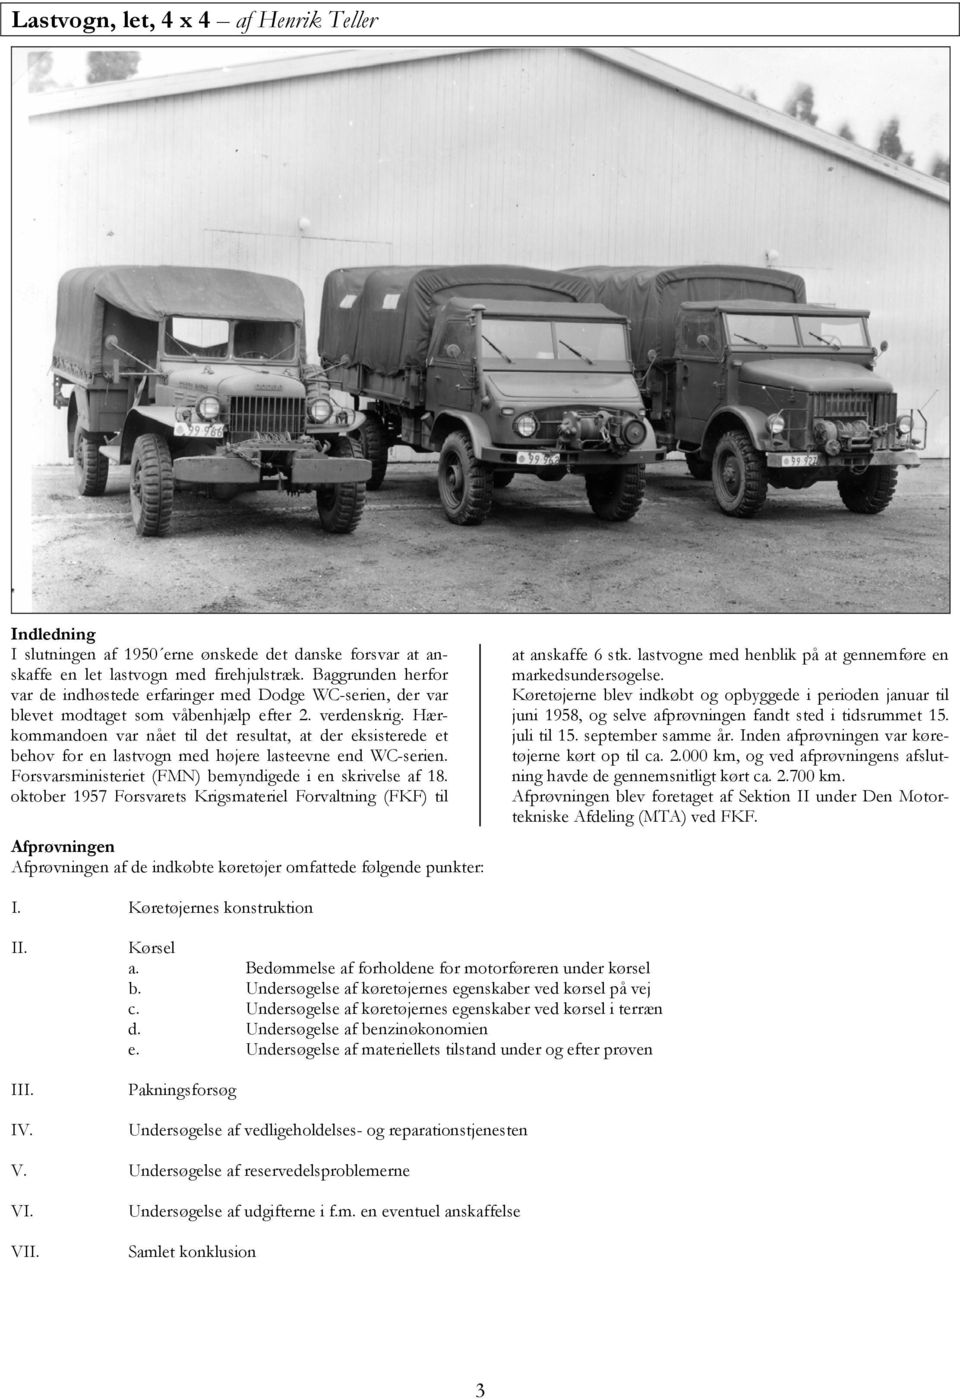 Hærkommandoen var nået til det resultat, at der eksisterede et behov for en lastvogn med højere lasteevne end WC-serien. Forsvarsministeriet (FMN) bemyndigede i en skrivelse af 18.